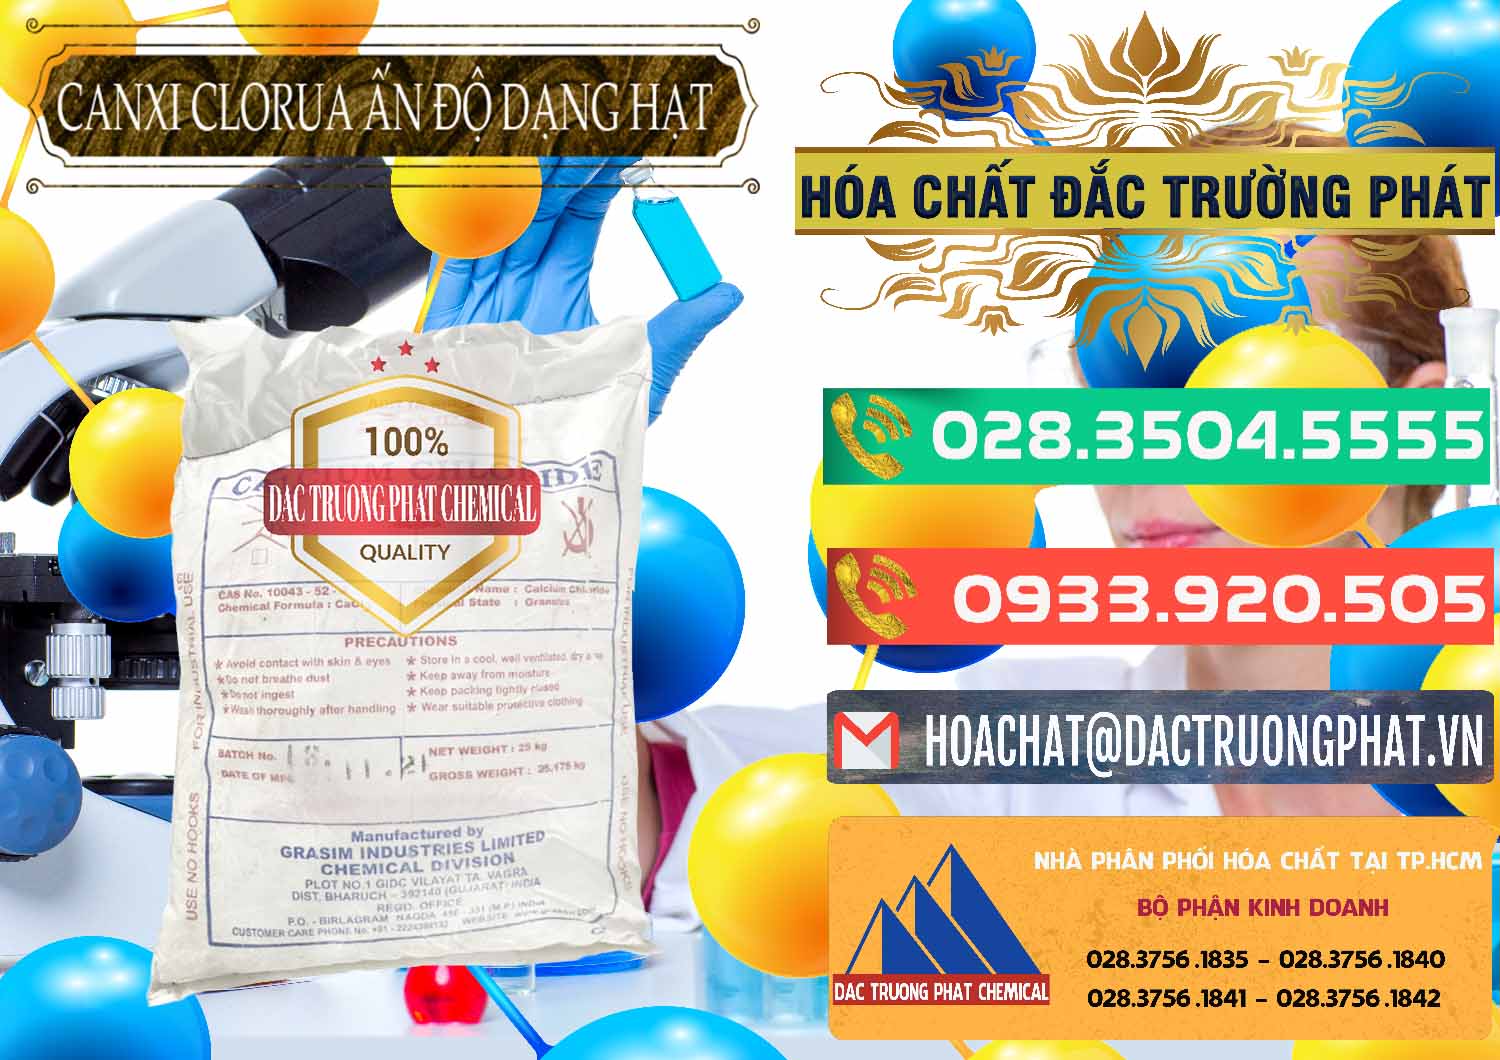 Công ty cung ứng ( bán ) CaCl2 – Canxi Clorua Dạng Hạt Aditya Birla Grasim Ấn Độ India - 0418 - Chuyên bán và phân phối hóa chất tại TP.HCM - congtyhoachat.com.vn